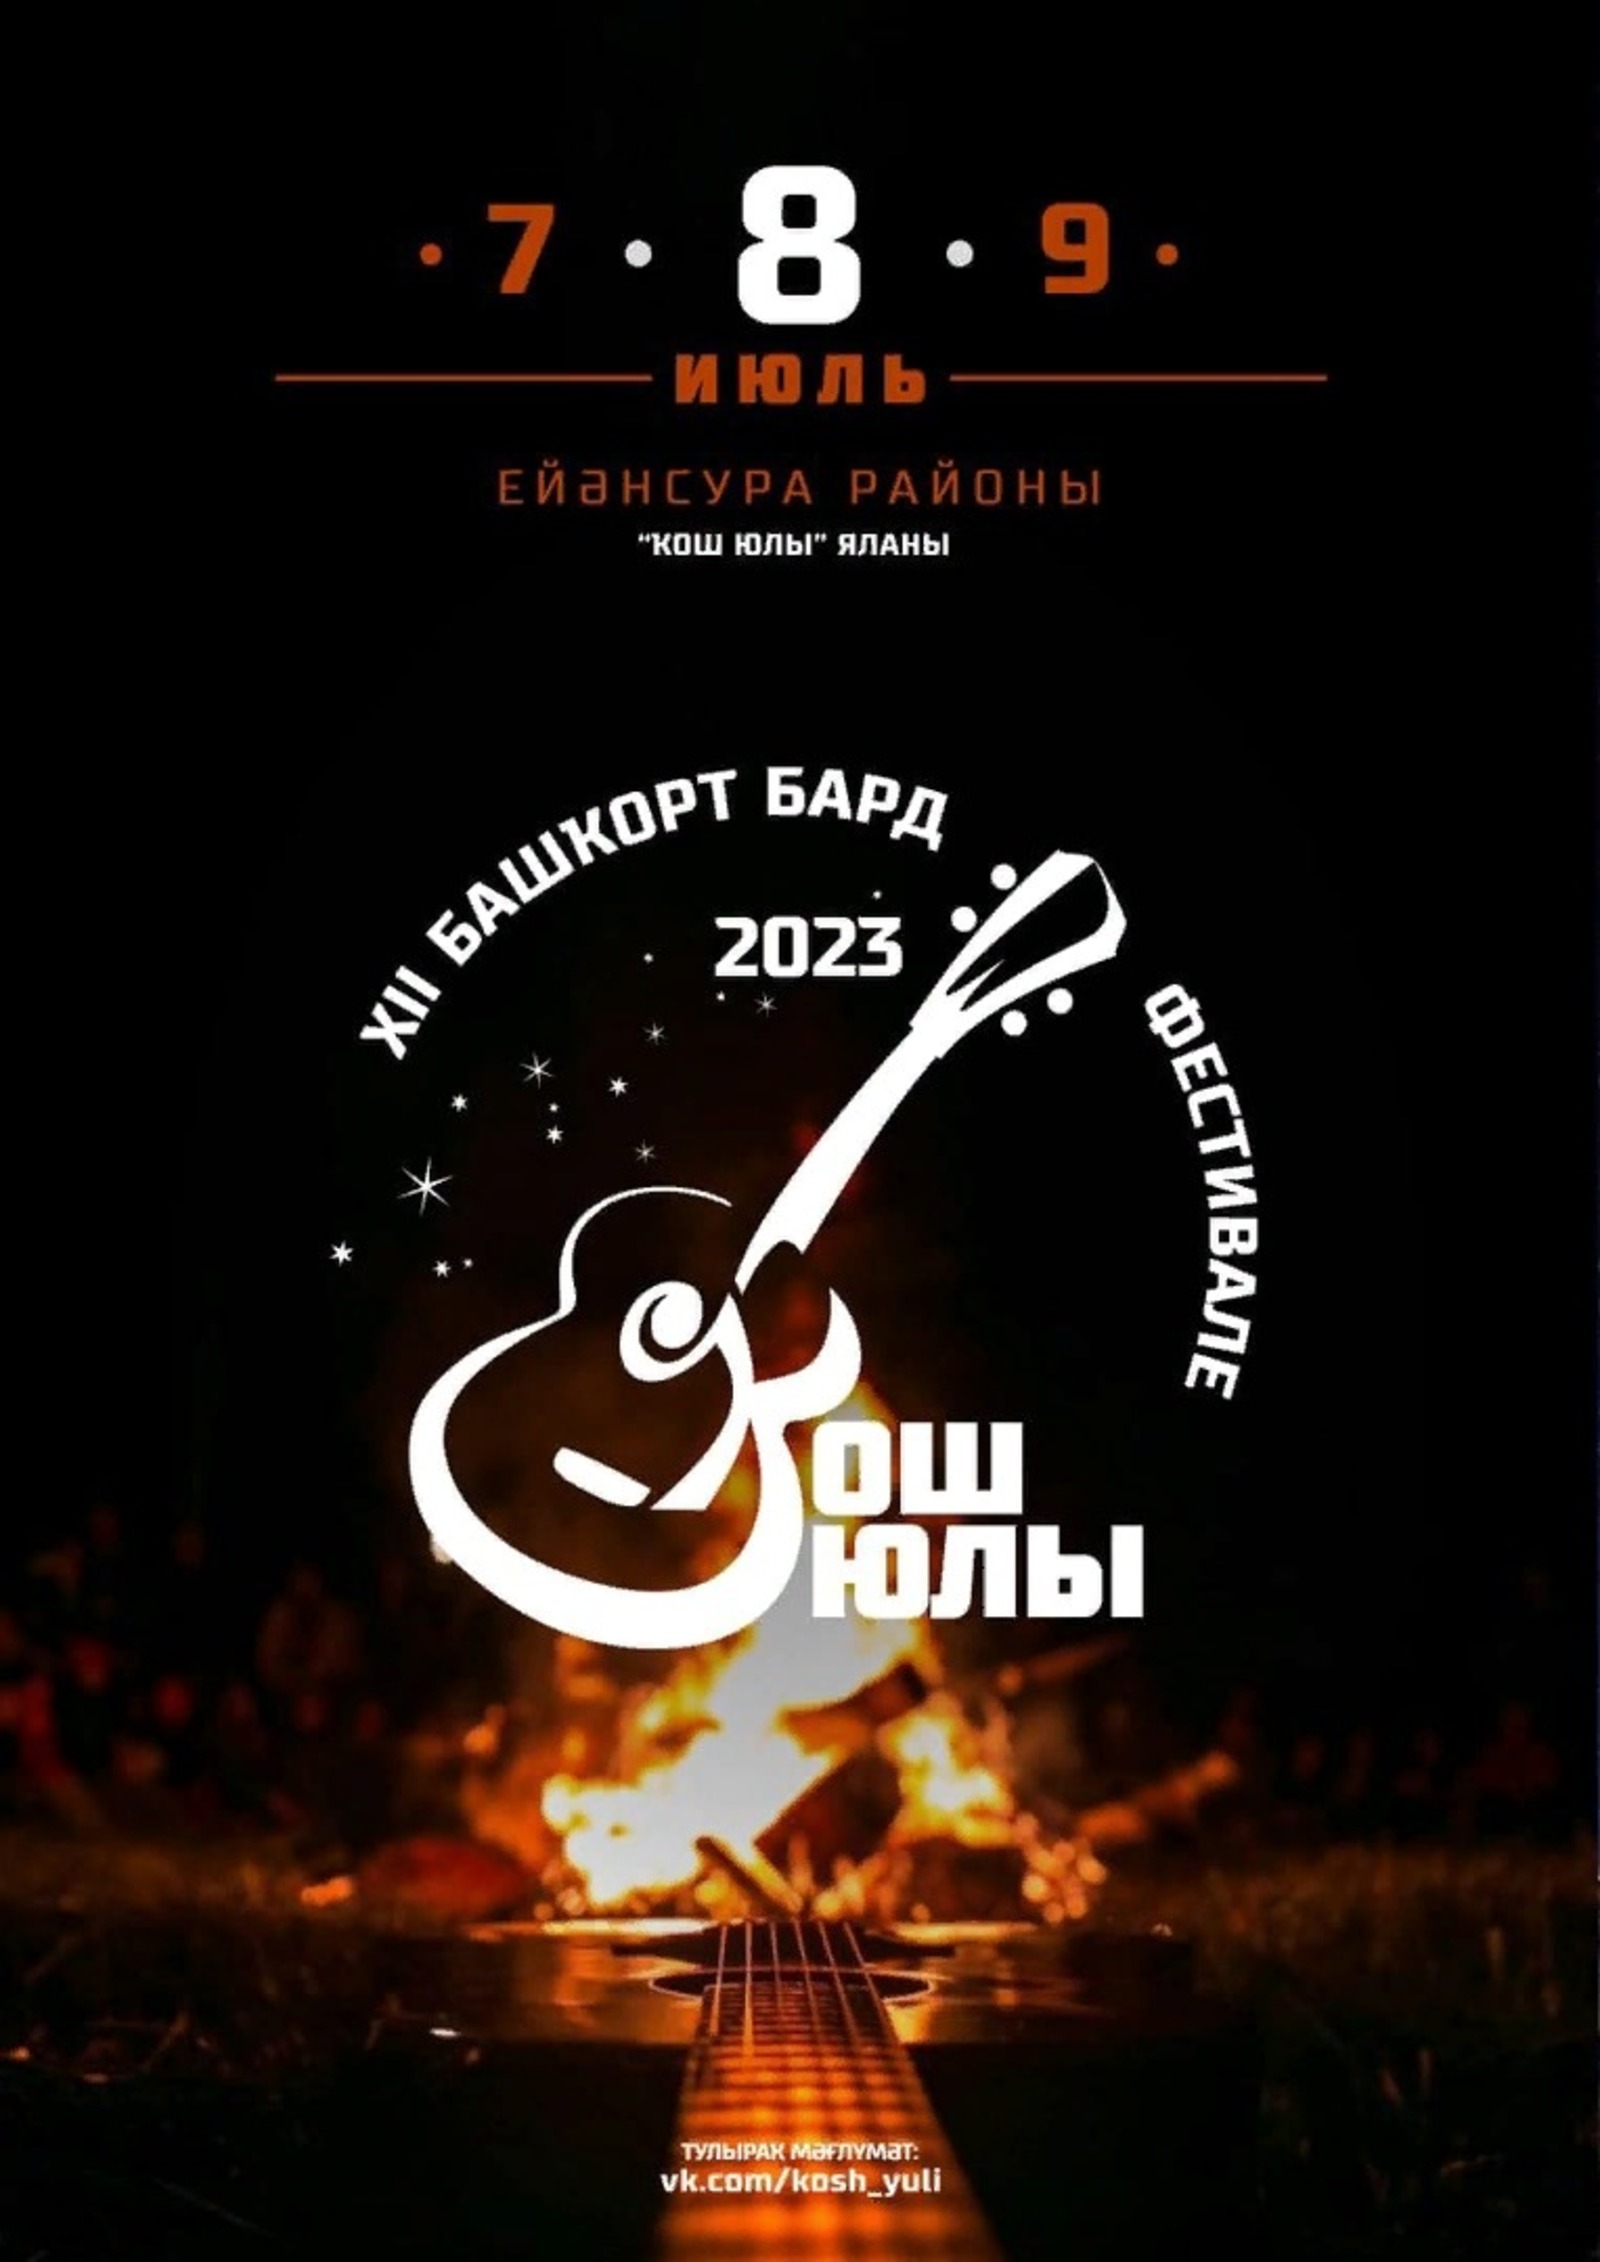 Республиканский фестиваль авторской песни  "Кош юлы" пройдет 7–9 июля в Зианчуринском районе.